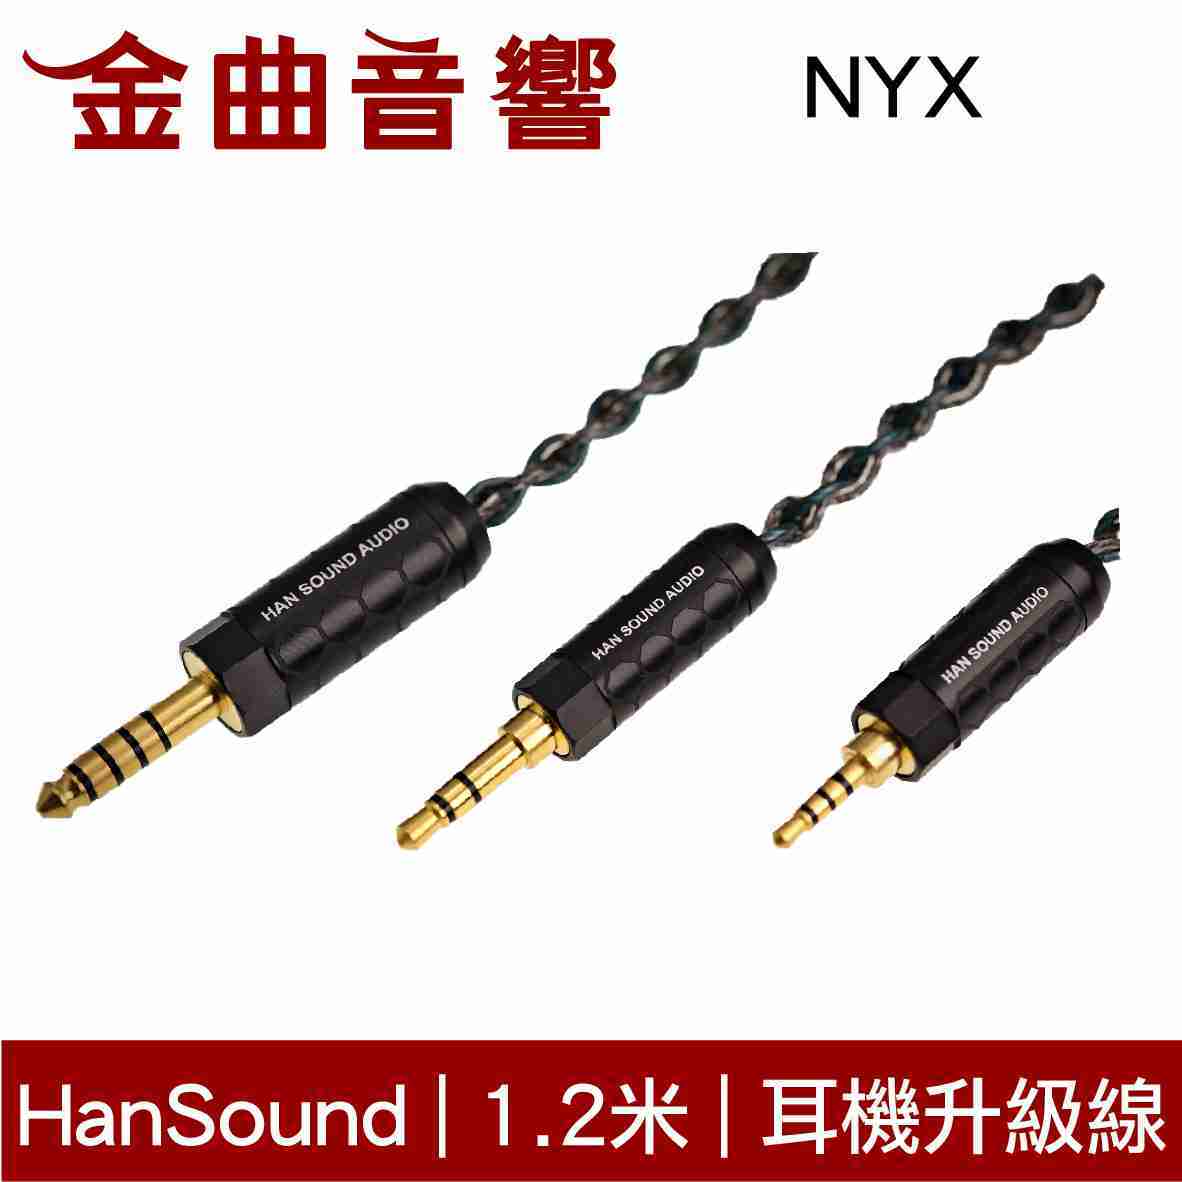 Han Sound 漢聲 NYX 耳機 升級線 4Wire 里茲線 | 金曲音響